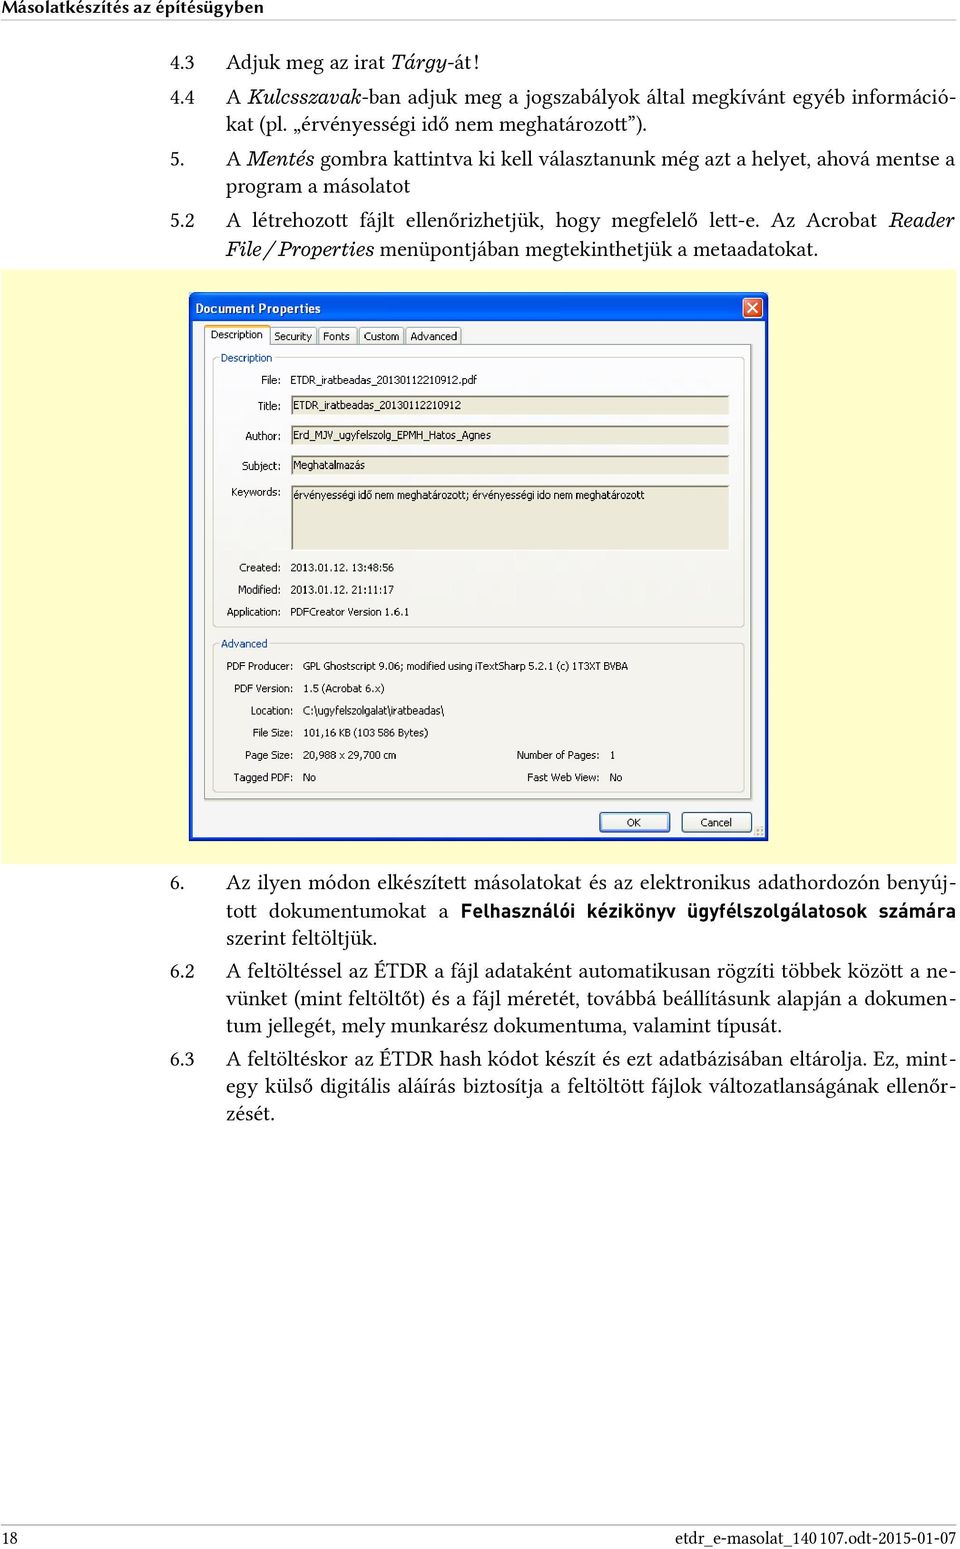 Az Acrobat Reader File / Properties menüpontjában megtekinthetjük a metaadatokat. 6.